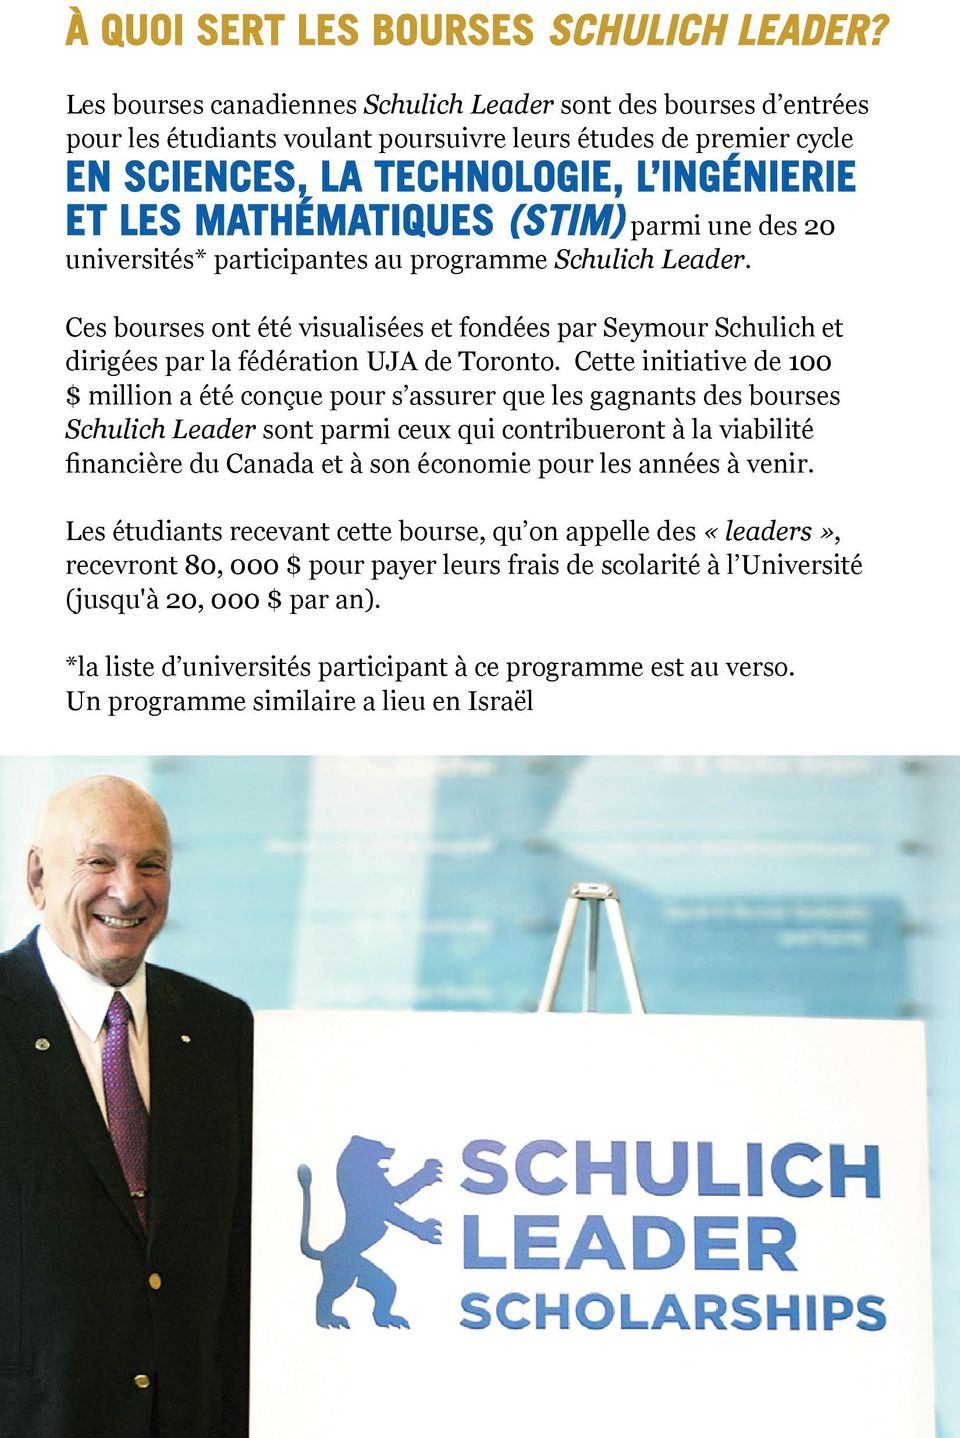 (STIM) parmi une des 20 universités* participantes au programme Schulich Leader. Ces bourses ont été visualisées et fondées par Seymour Schulich et dirigées par la fédération UJA de Toronto.